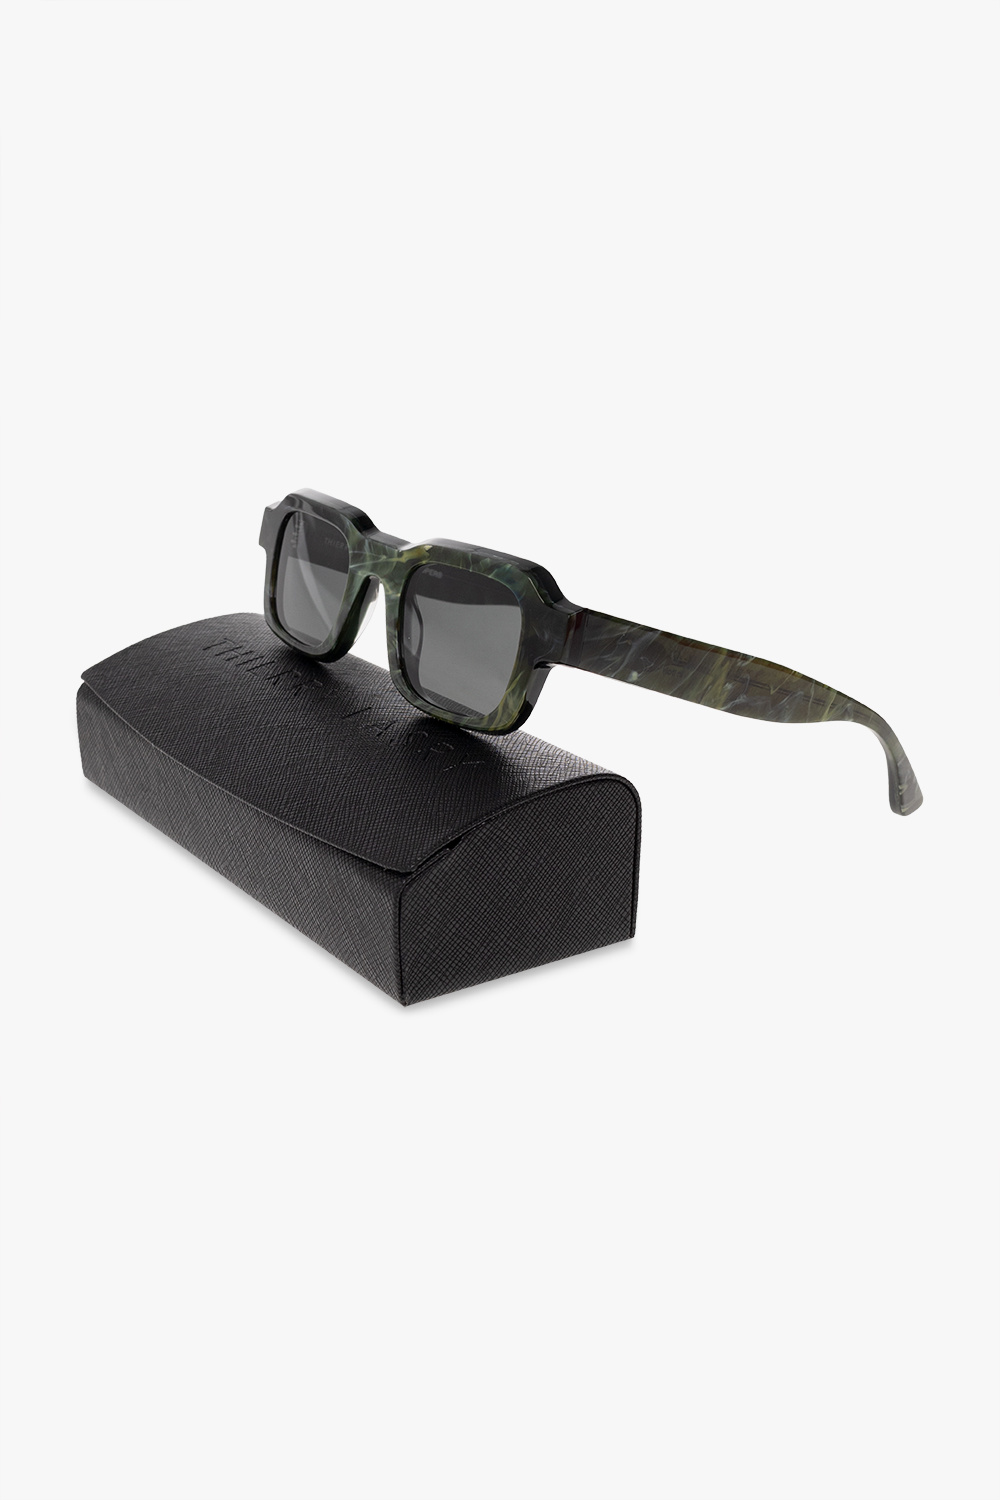 Thierry Lasry ‘Flexxxy’ sunglasses